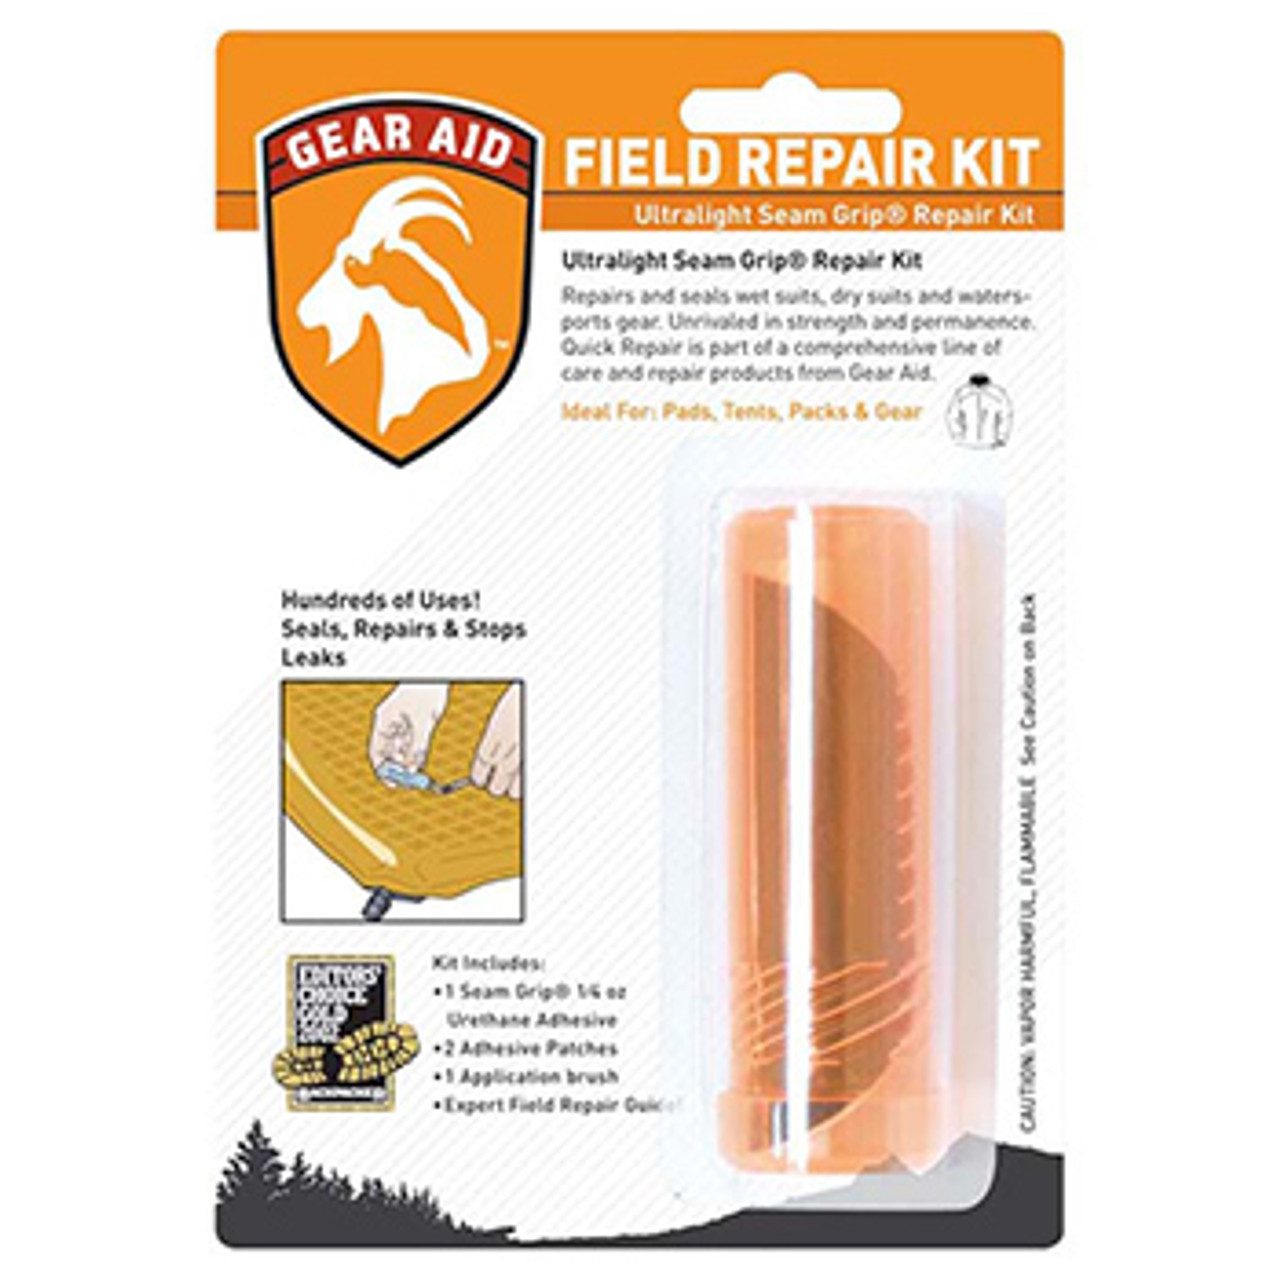 Gear Aid Seam Grip Field Repair Kit